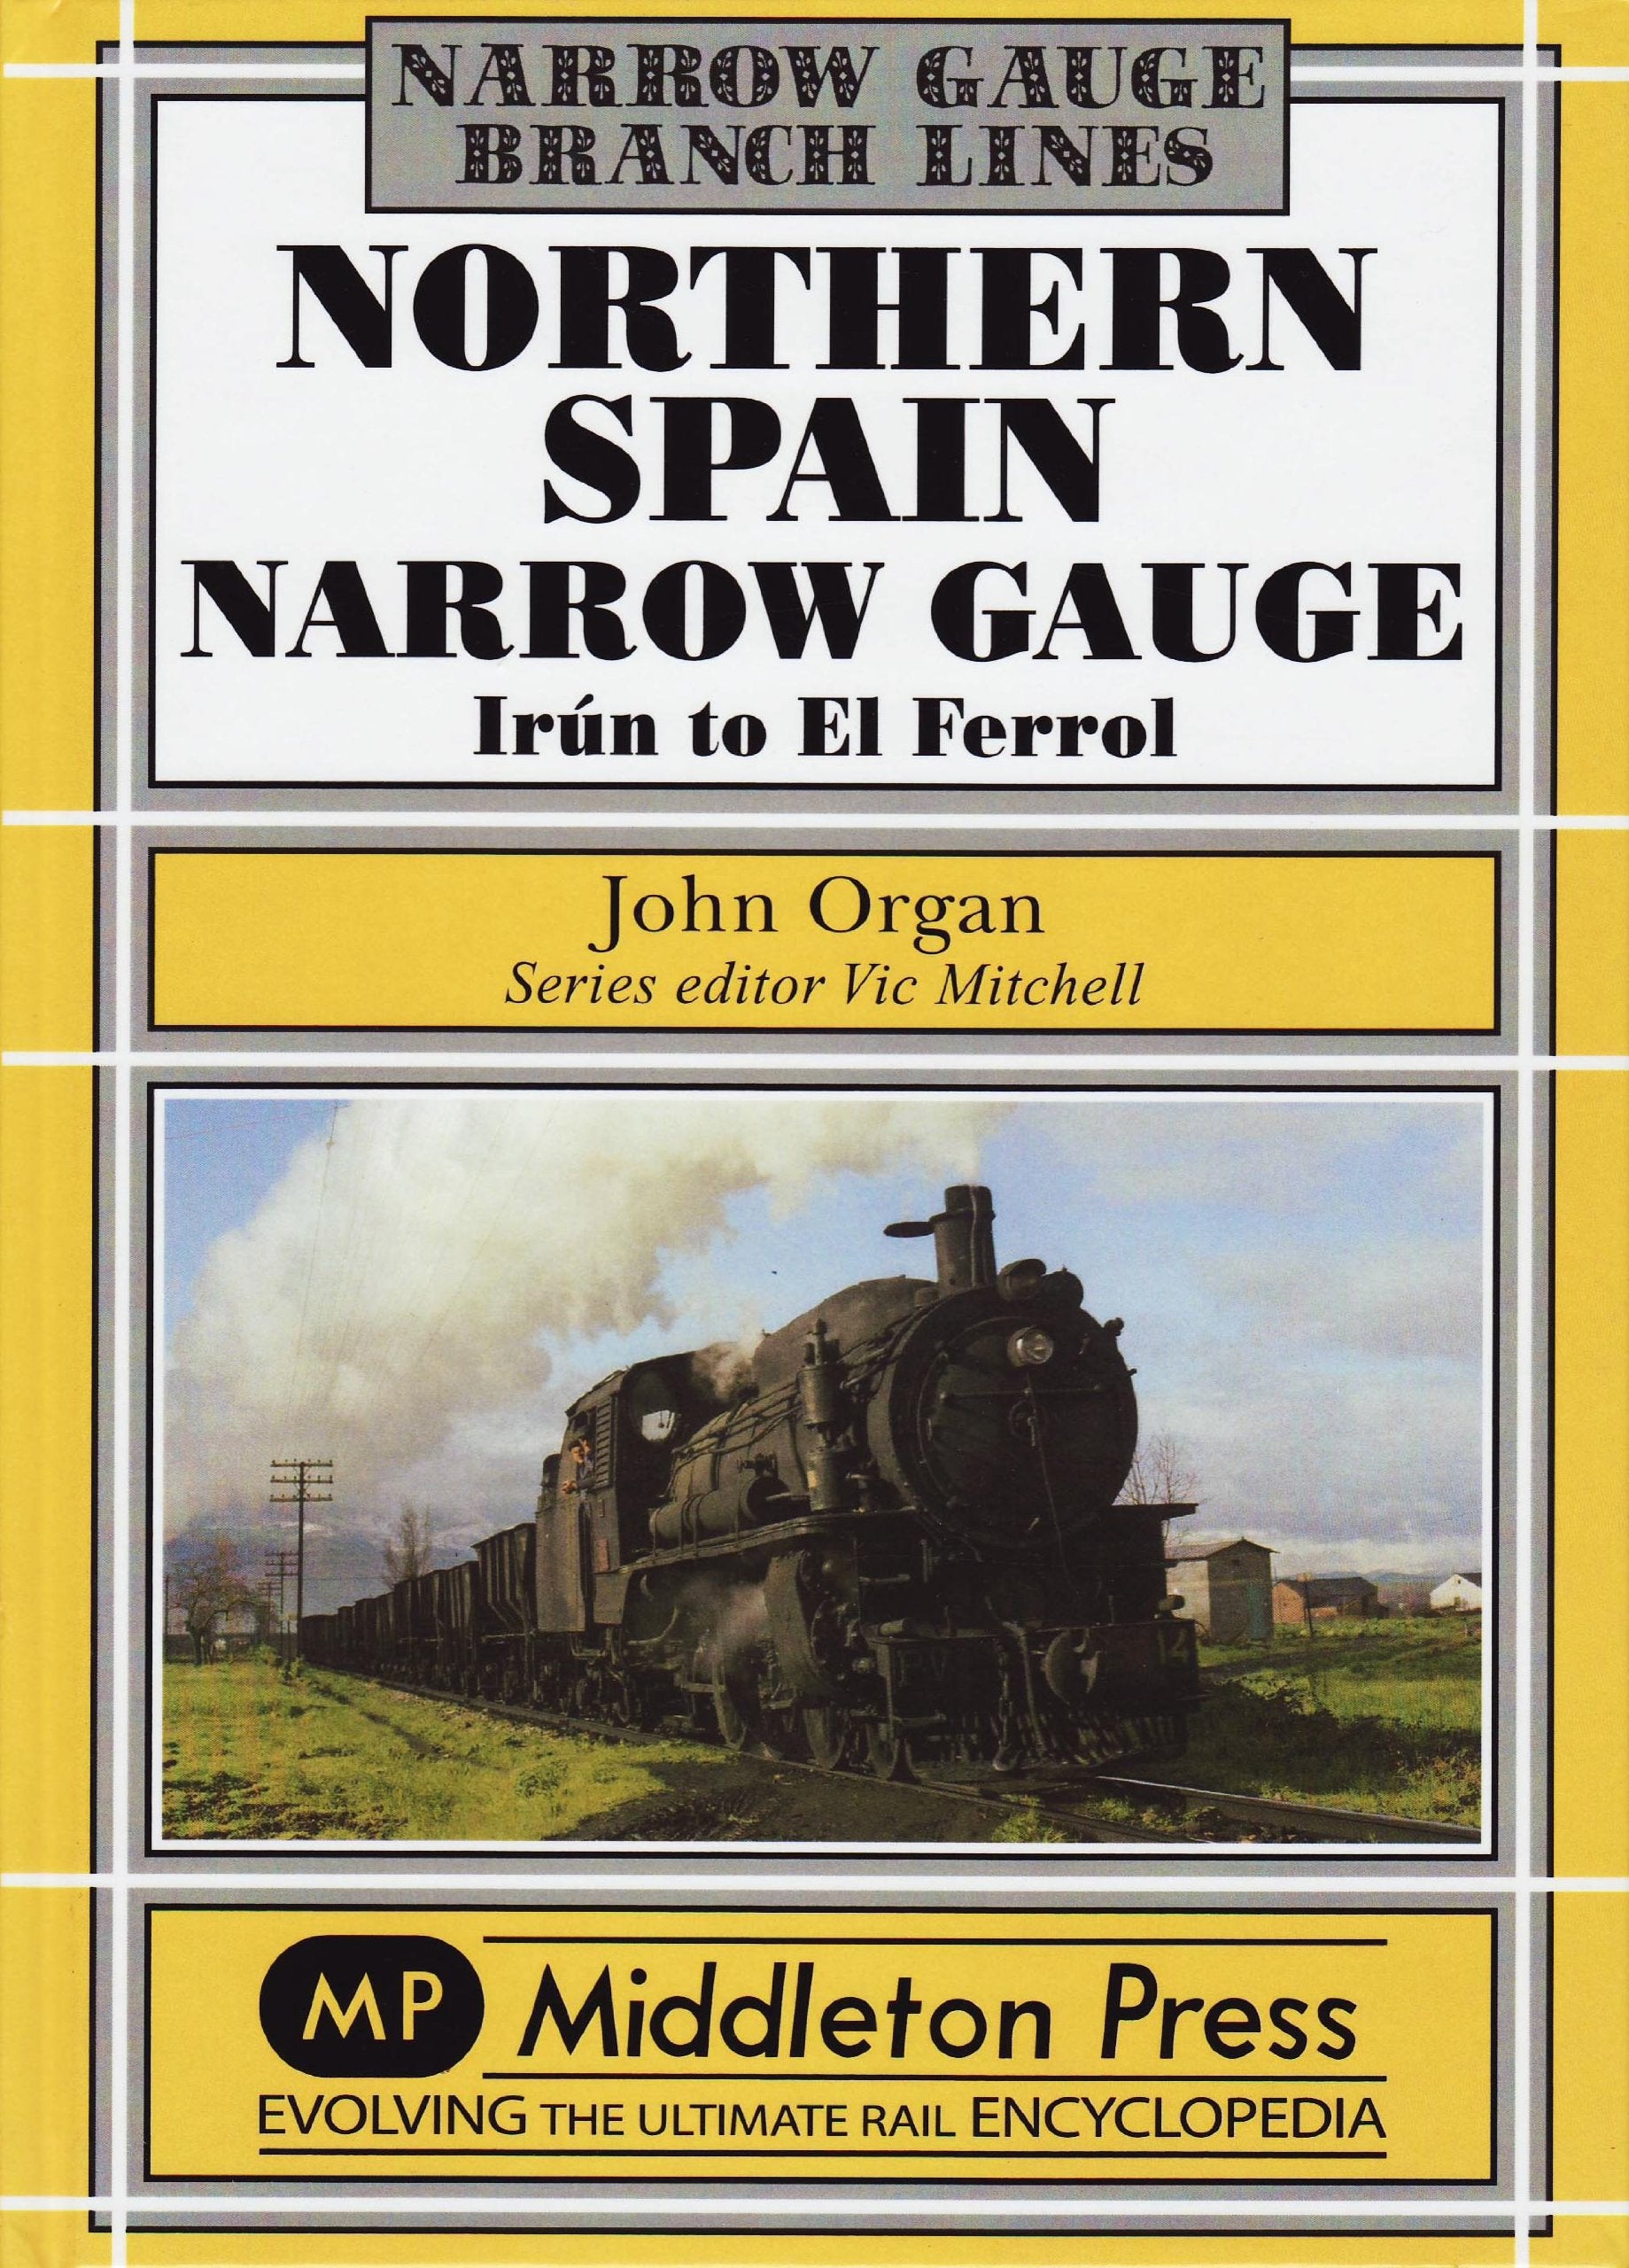 Narrow Gauge Northern Spain Narrow Gauge Irún to El Ferrol